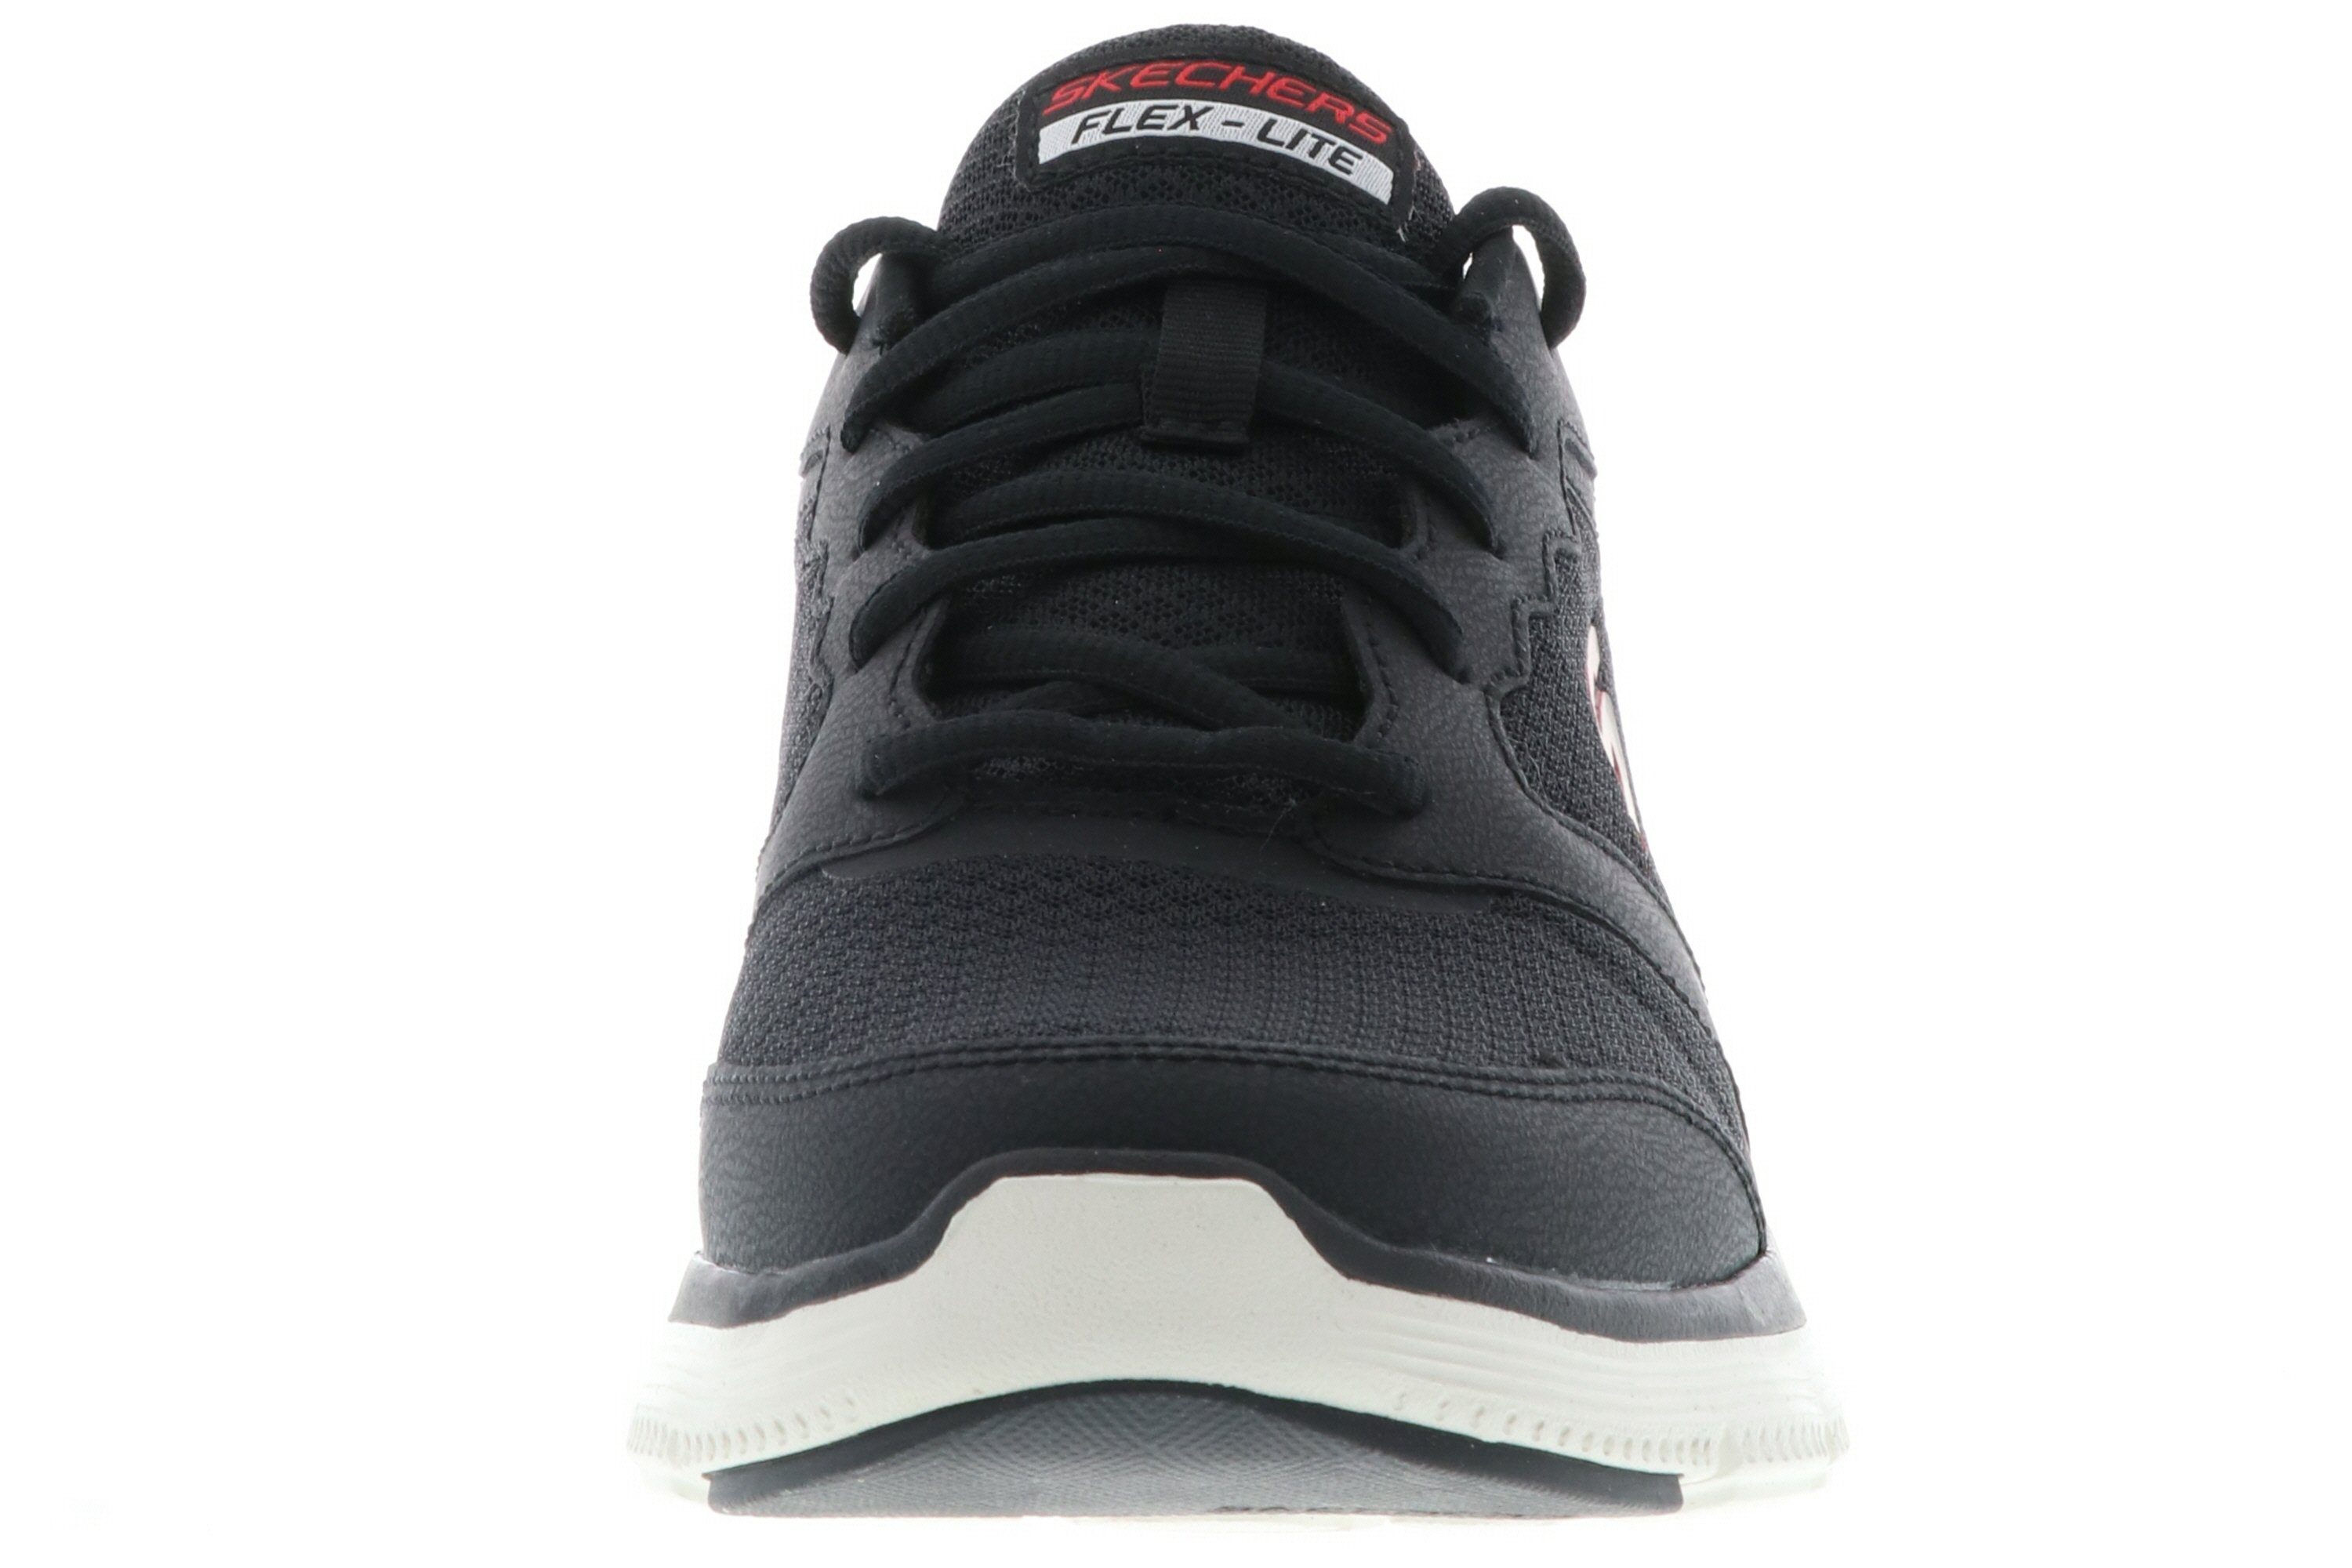 Black/Red Skechers rot 232225/BKRD / Advantage schwarz Flex Sneaker 4.0